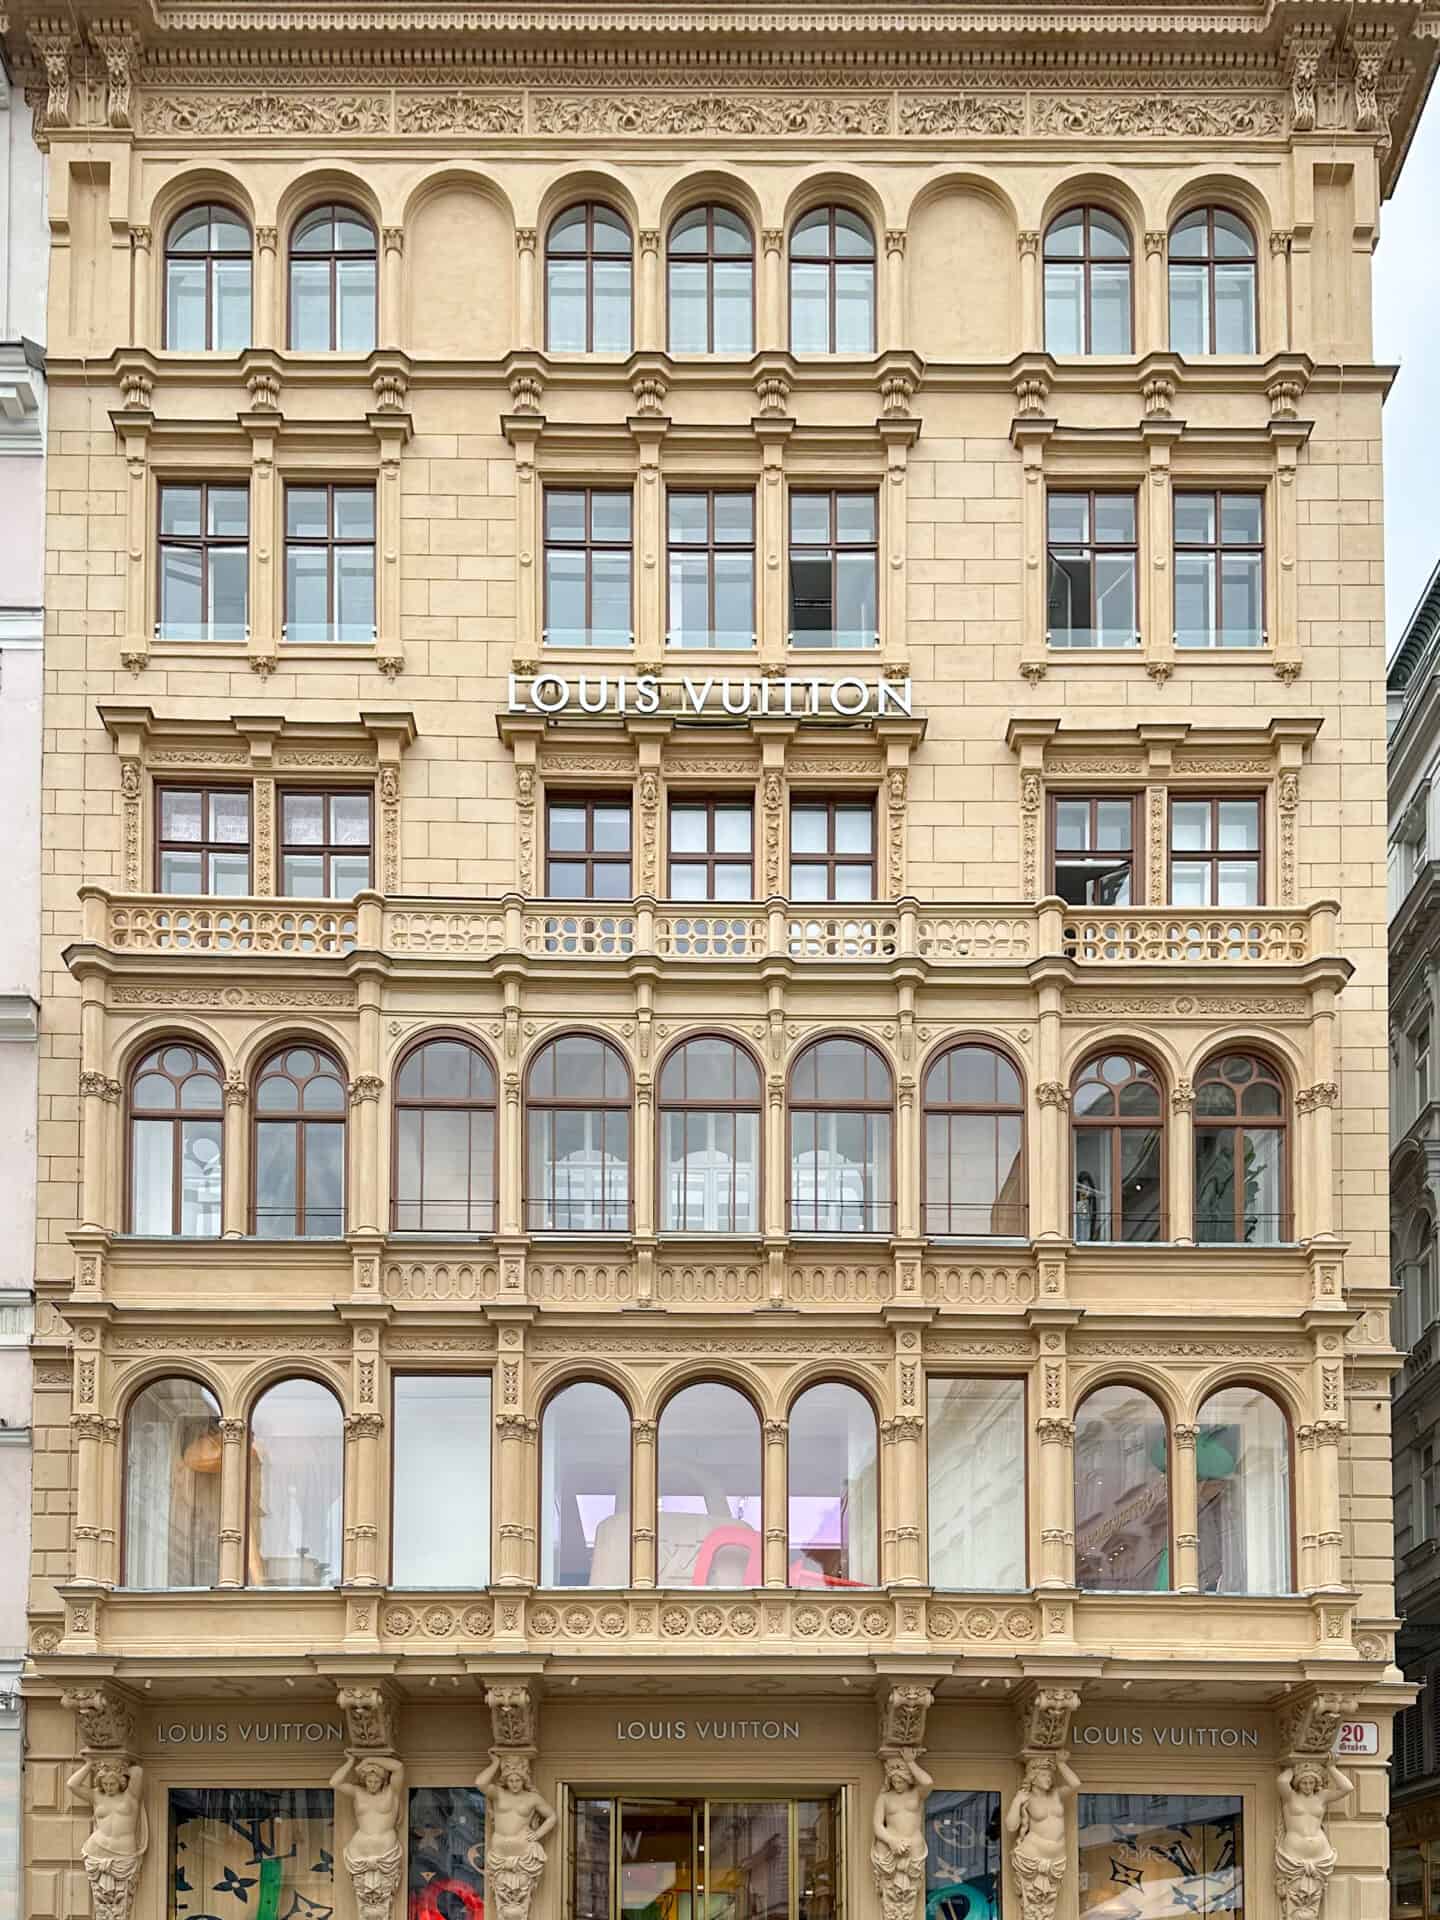 Louis Vuitton in Vienna Austria